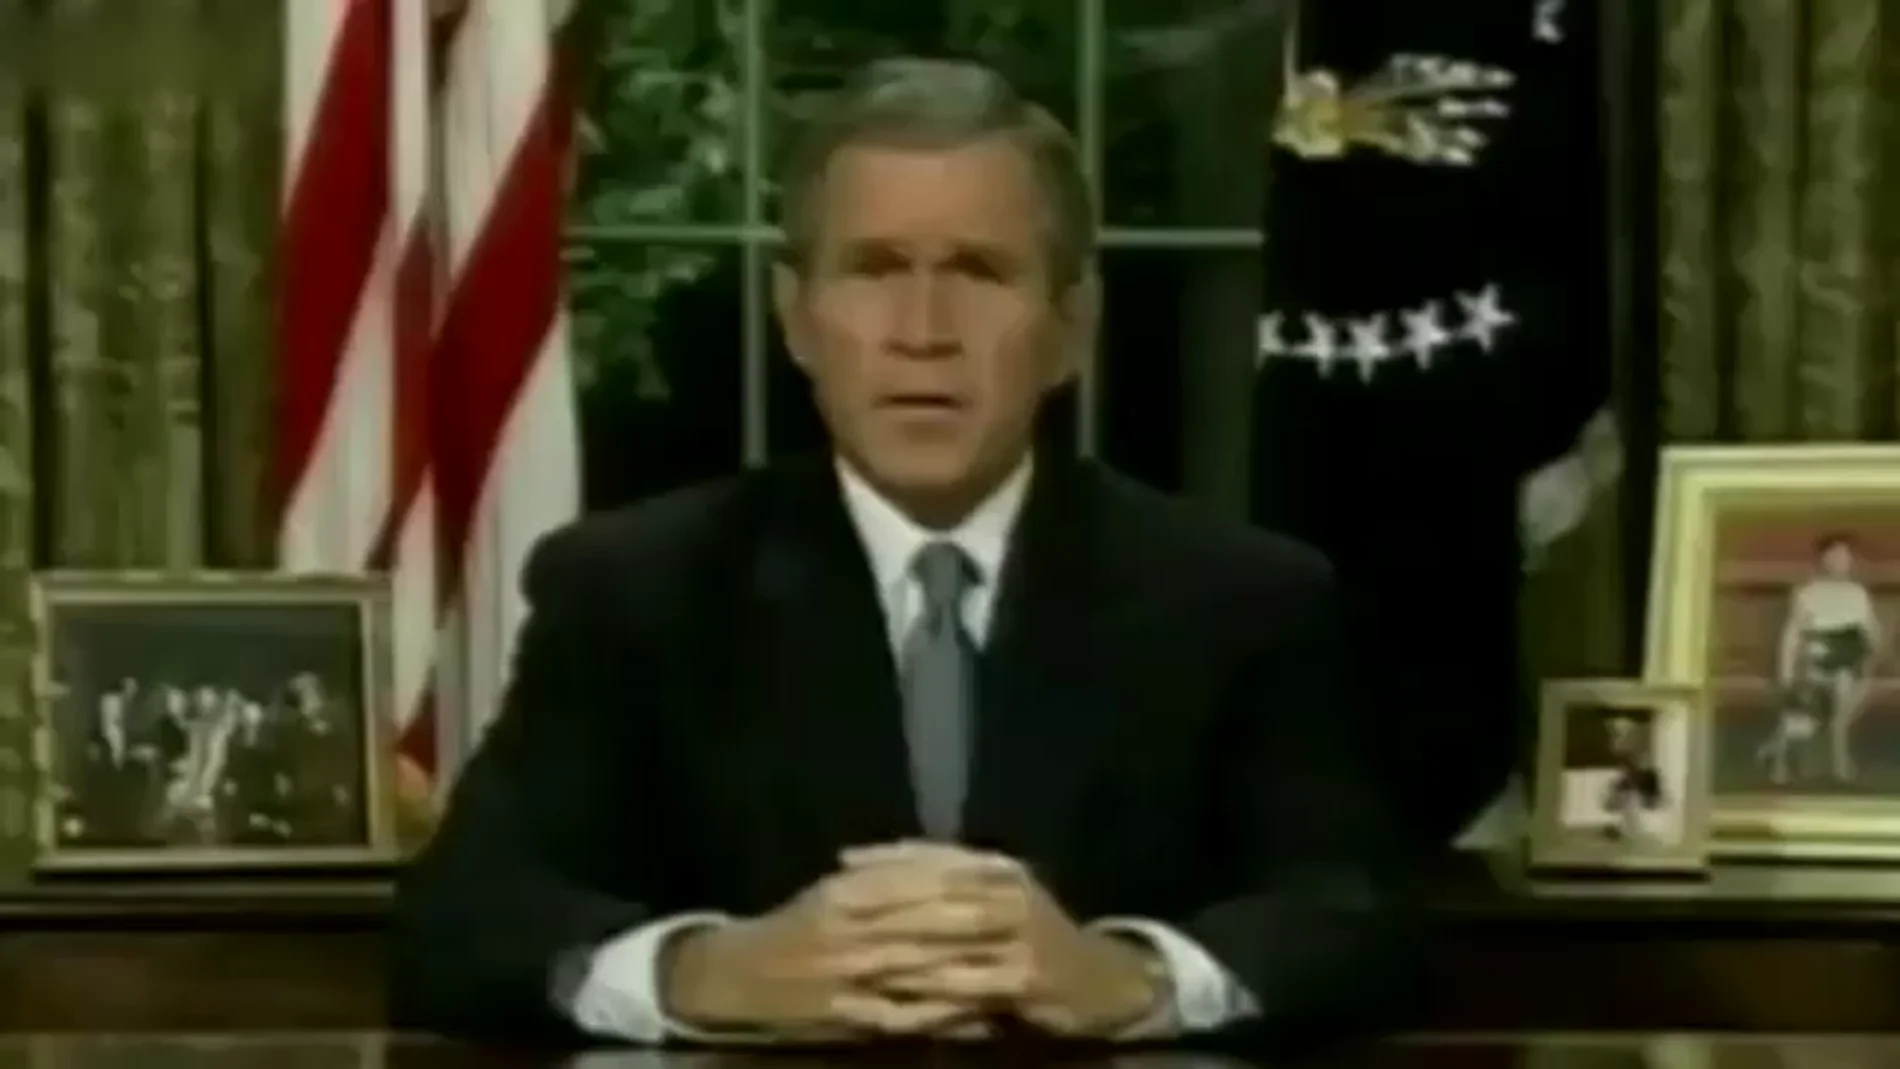 El histórico discurso de George W. Bush tras el 11-S: "No pueden destruir el acero de nuestra determinación"